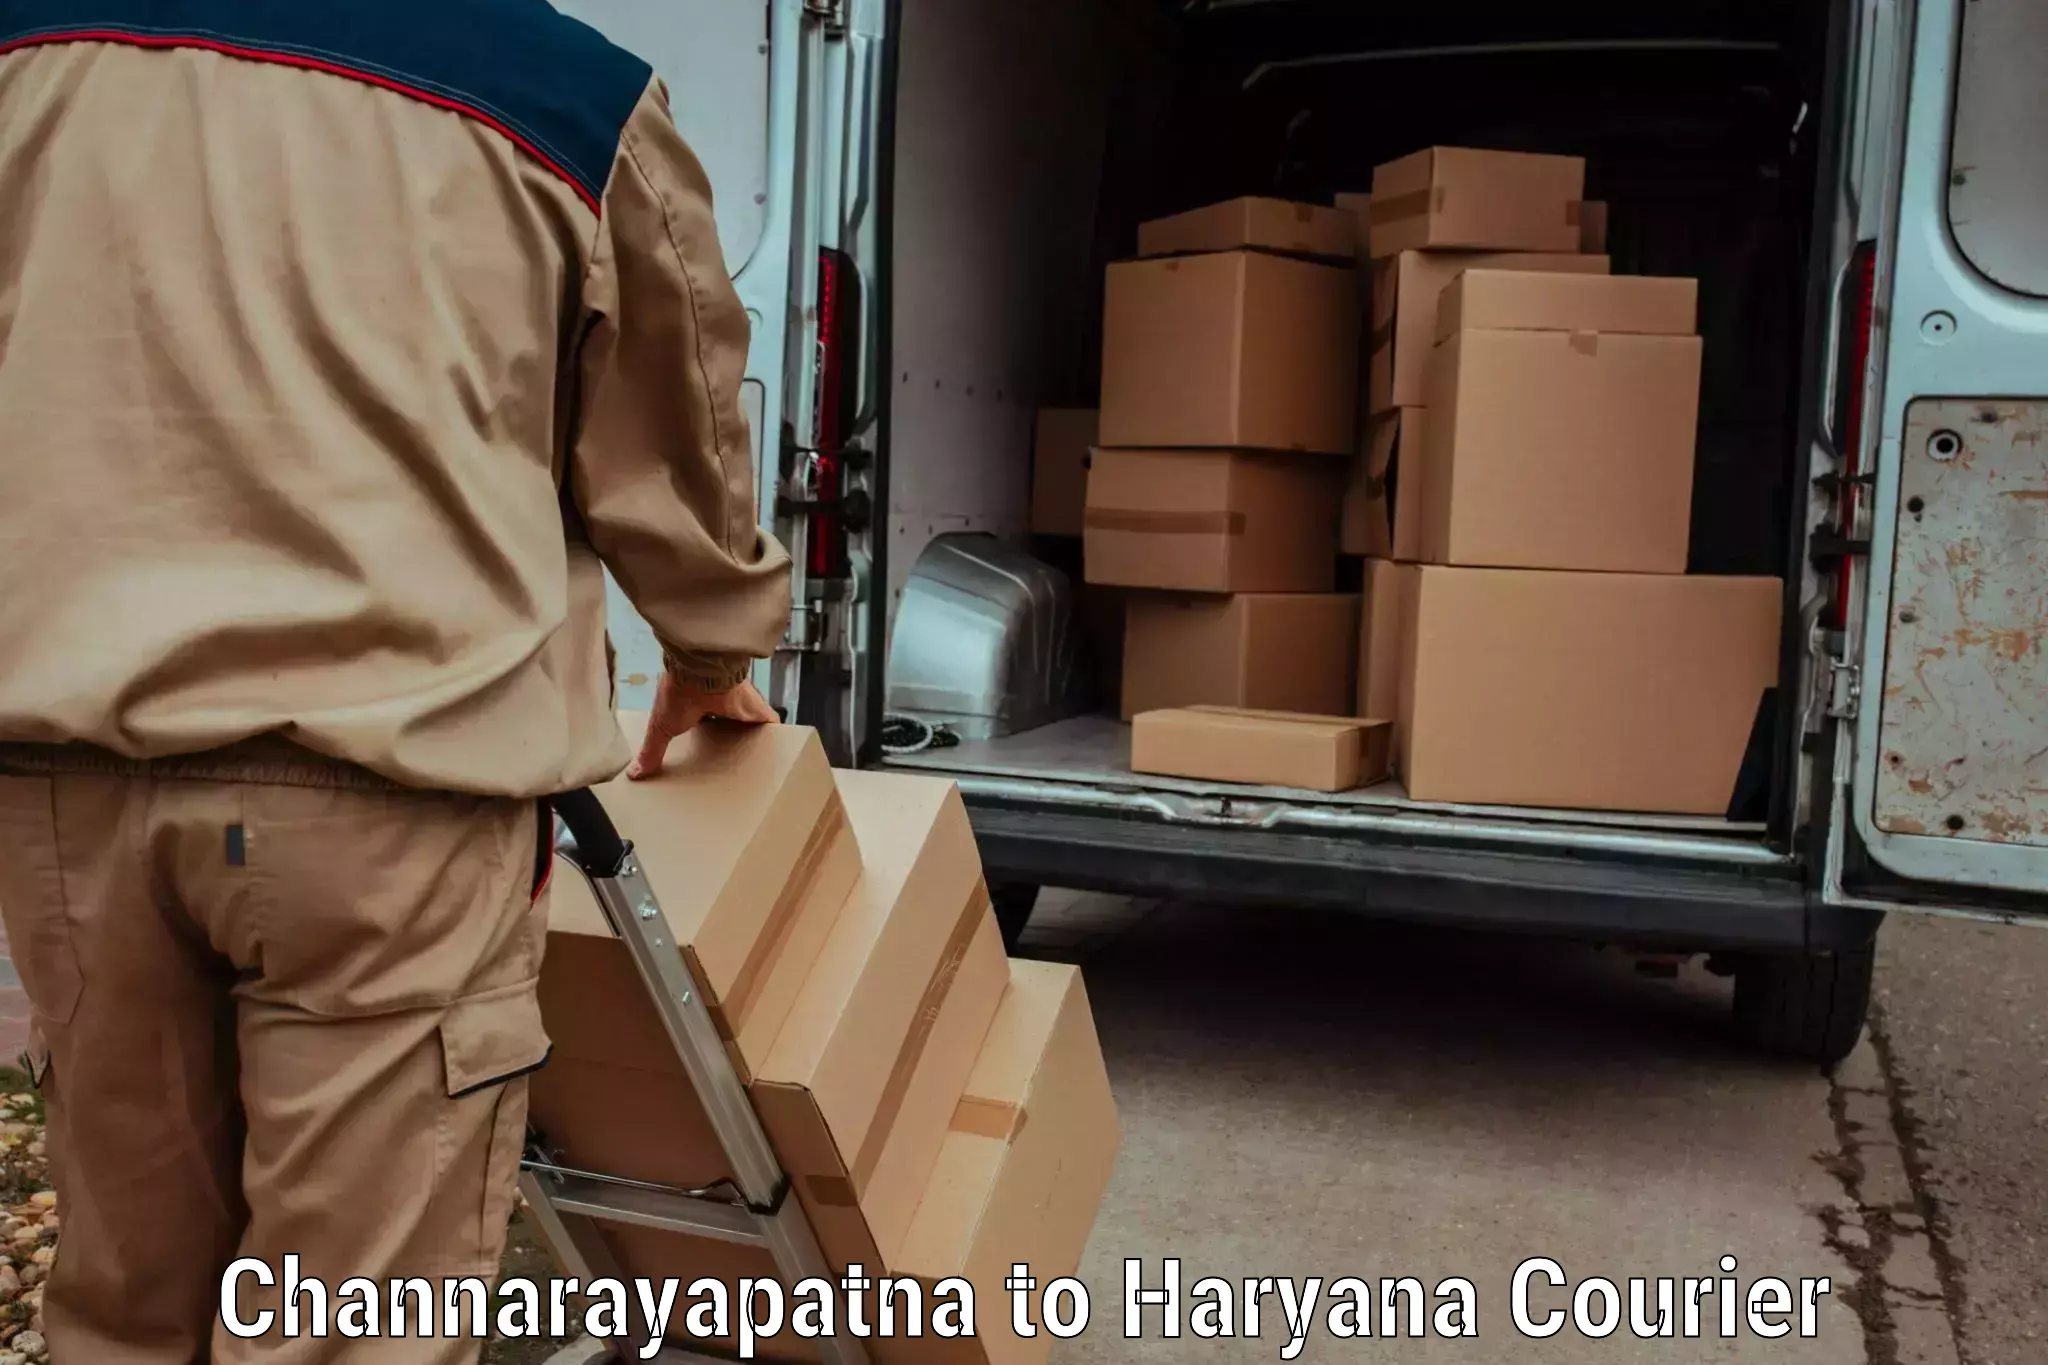 Baggage courier operations Channarayapatna to Haryana